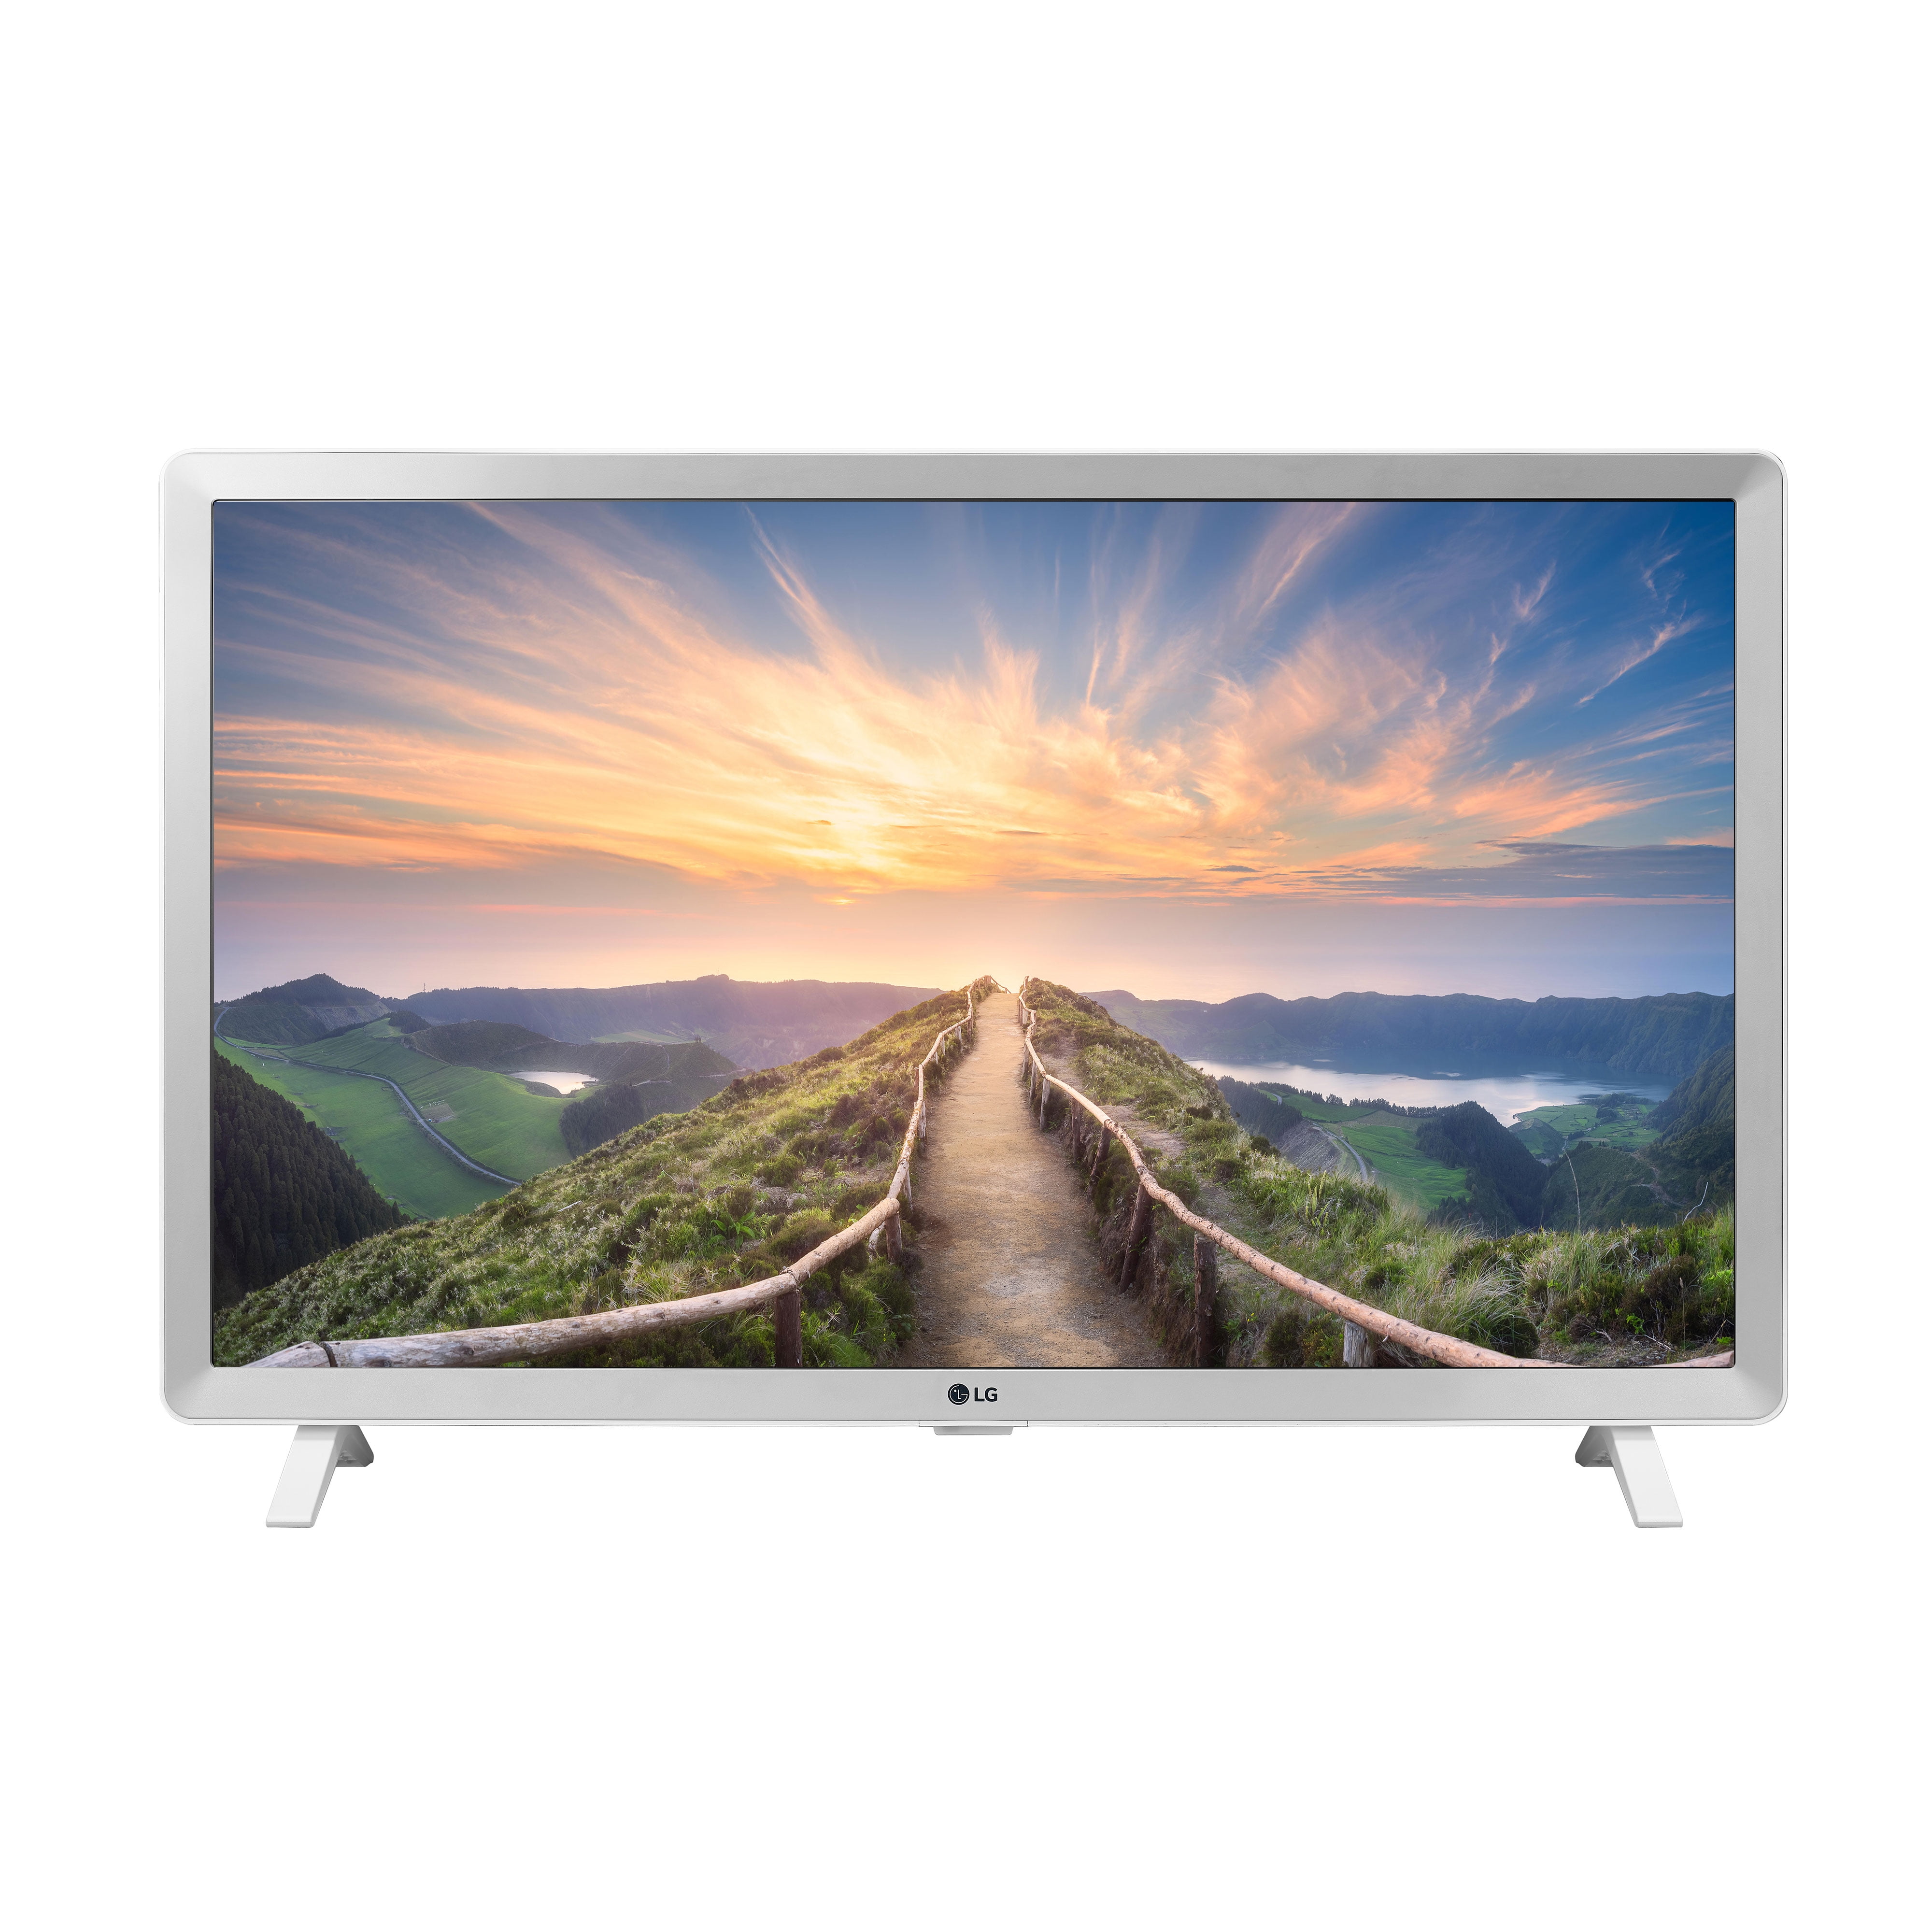 Купить телевизор смарт минск. Телевизор LG Smart TV 32 дюйма. Телевизор led 32 LG 32lm550b. LG led 24. Телевизор LG 32 дюйма смарт ТВ.